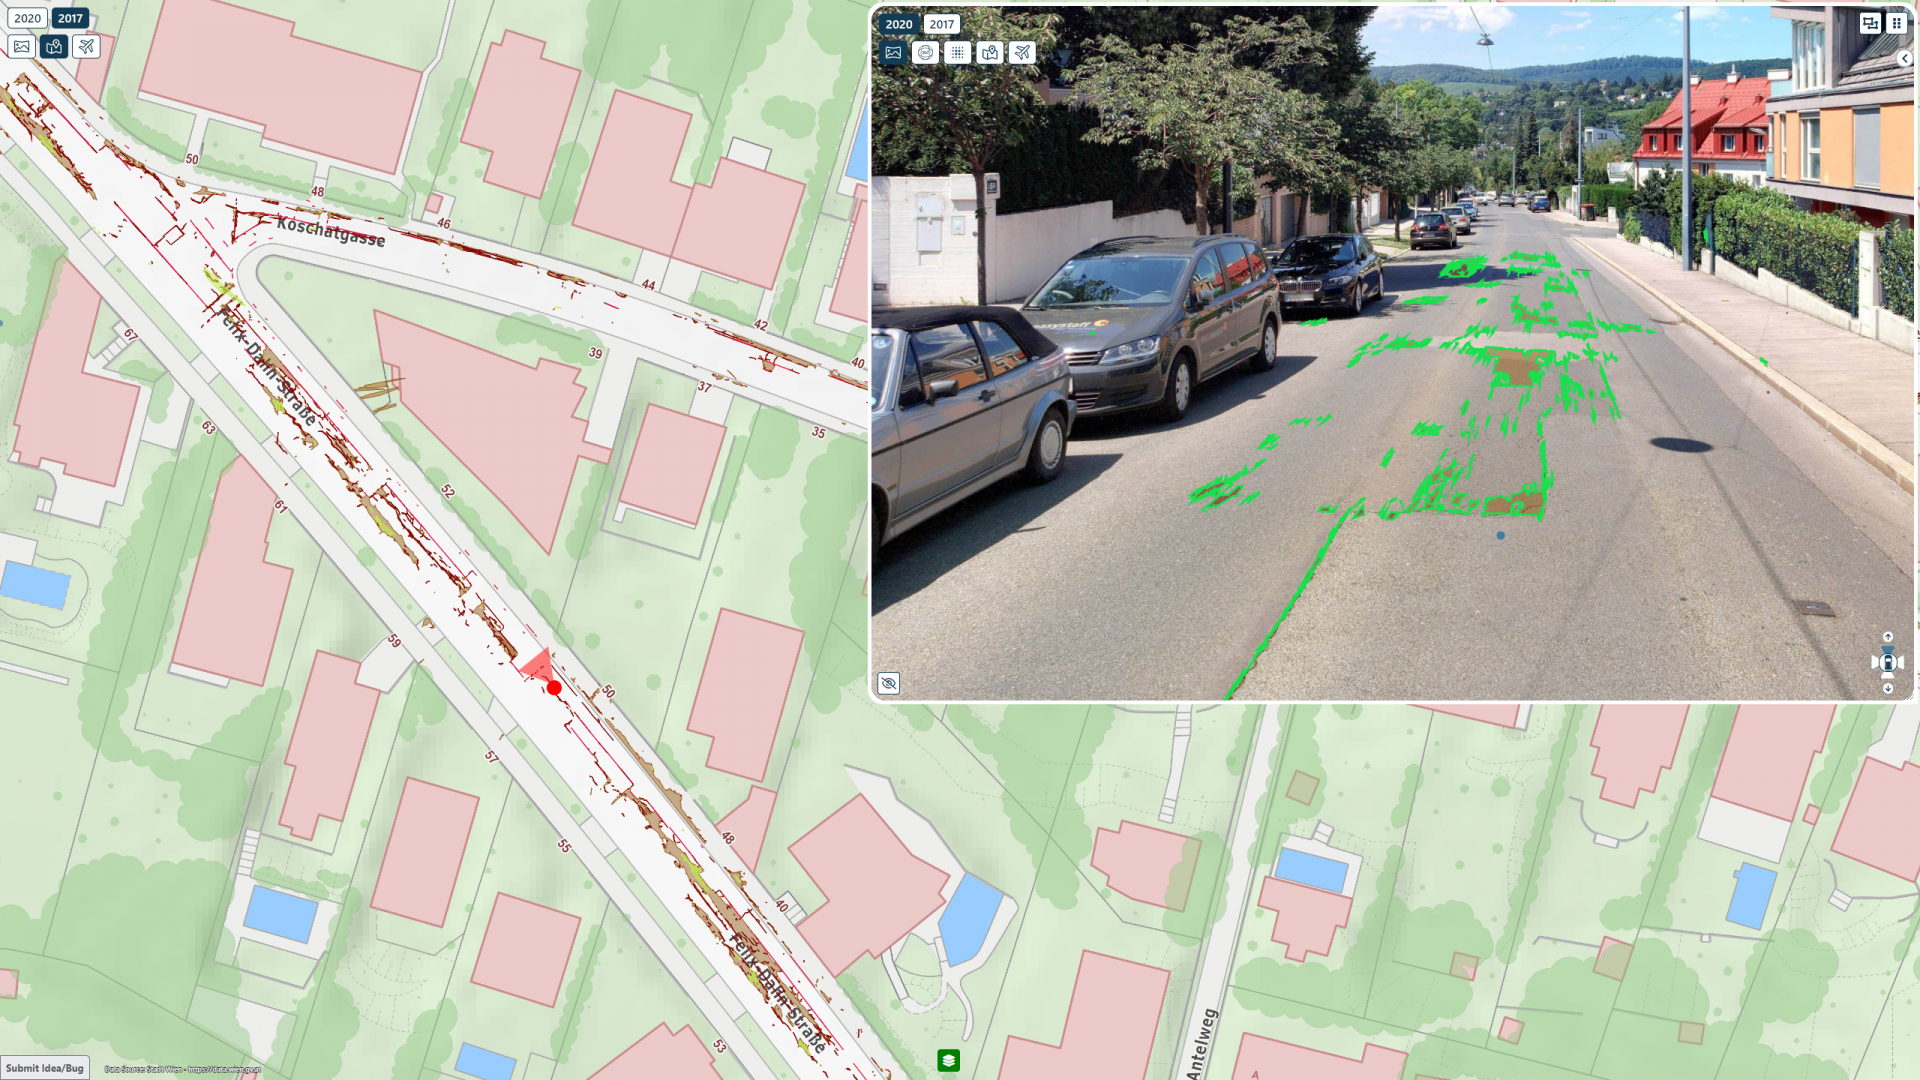 Detekt - Objekterkennung mit Künstlicher Intelligenz in Mobile Mapping Daten